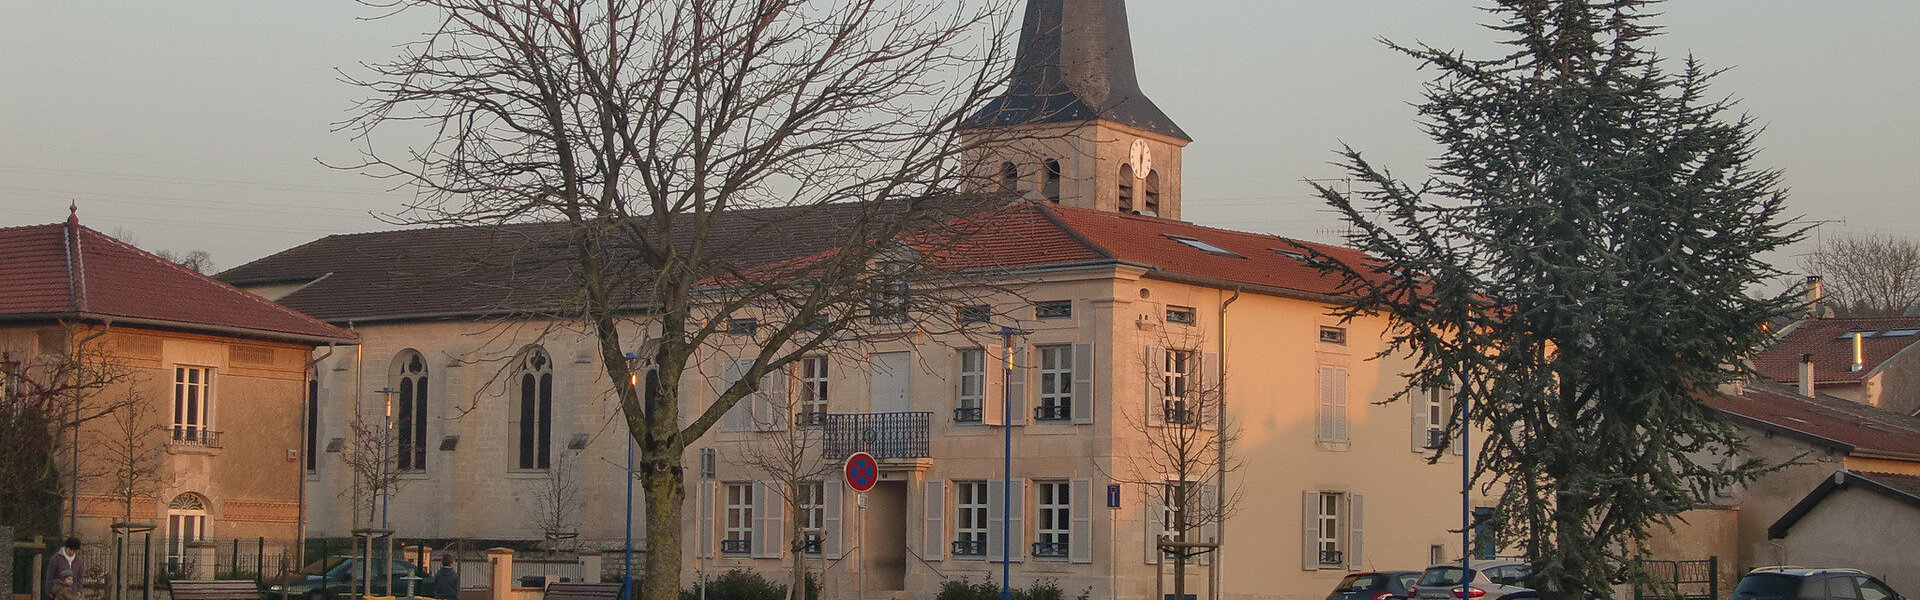 Site officiel de la commune d'Haudainville